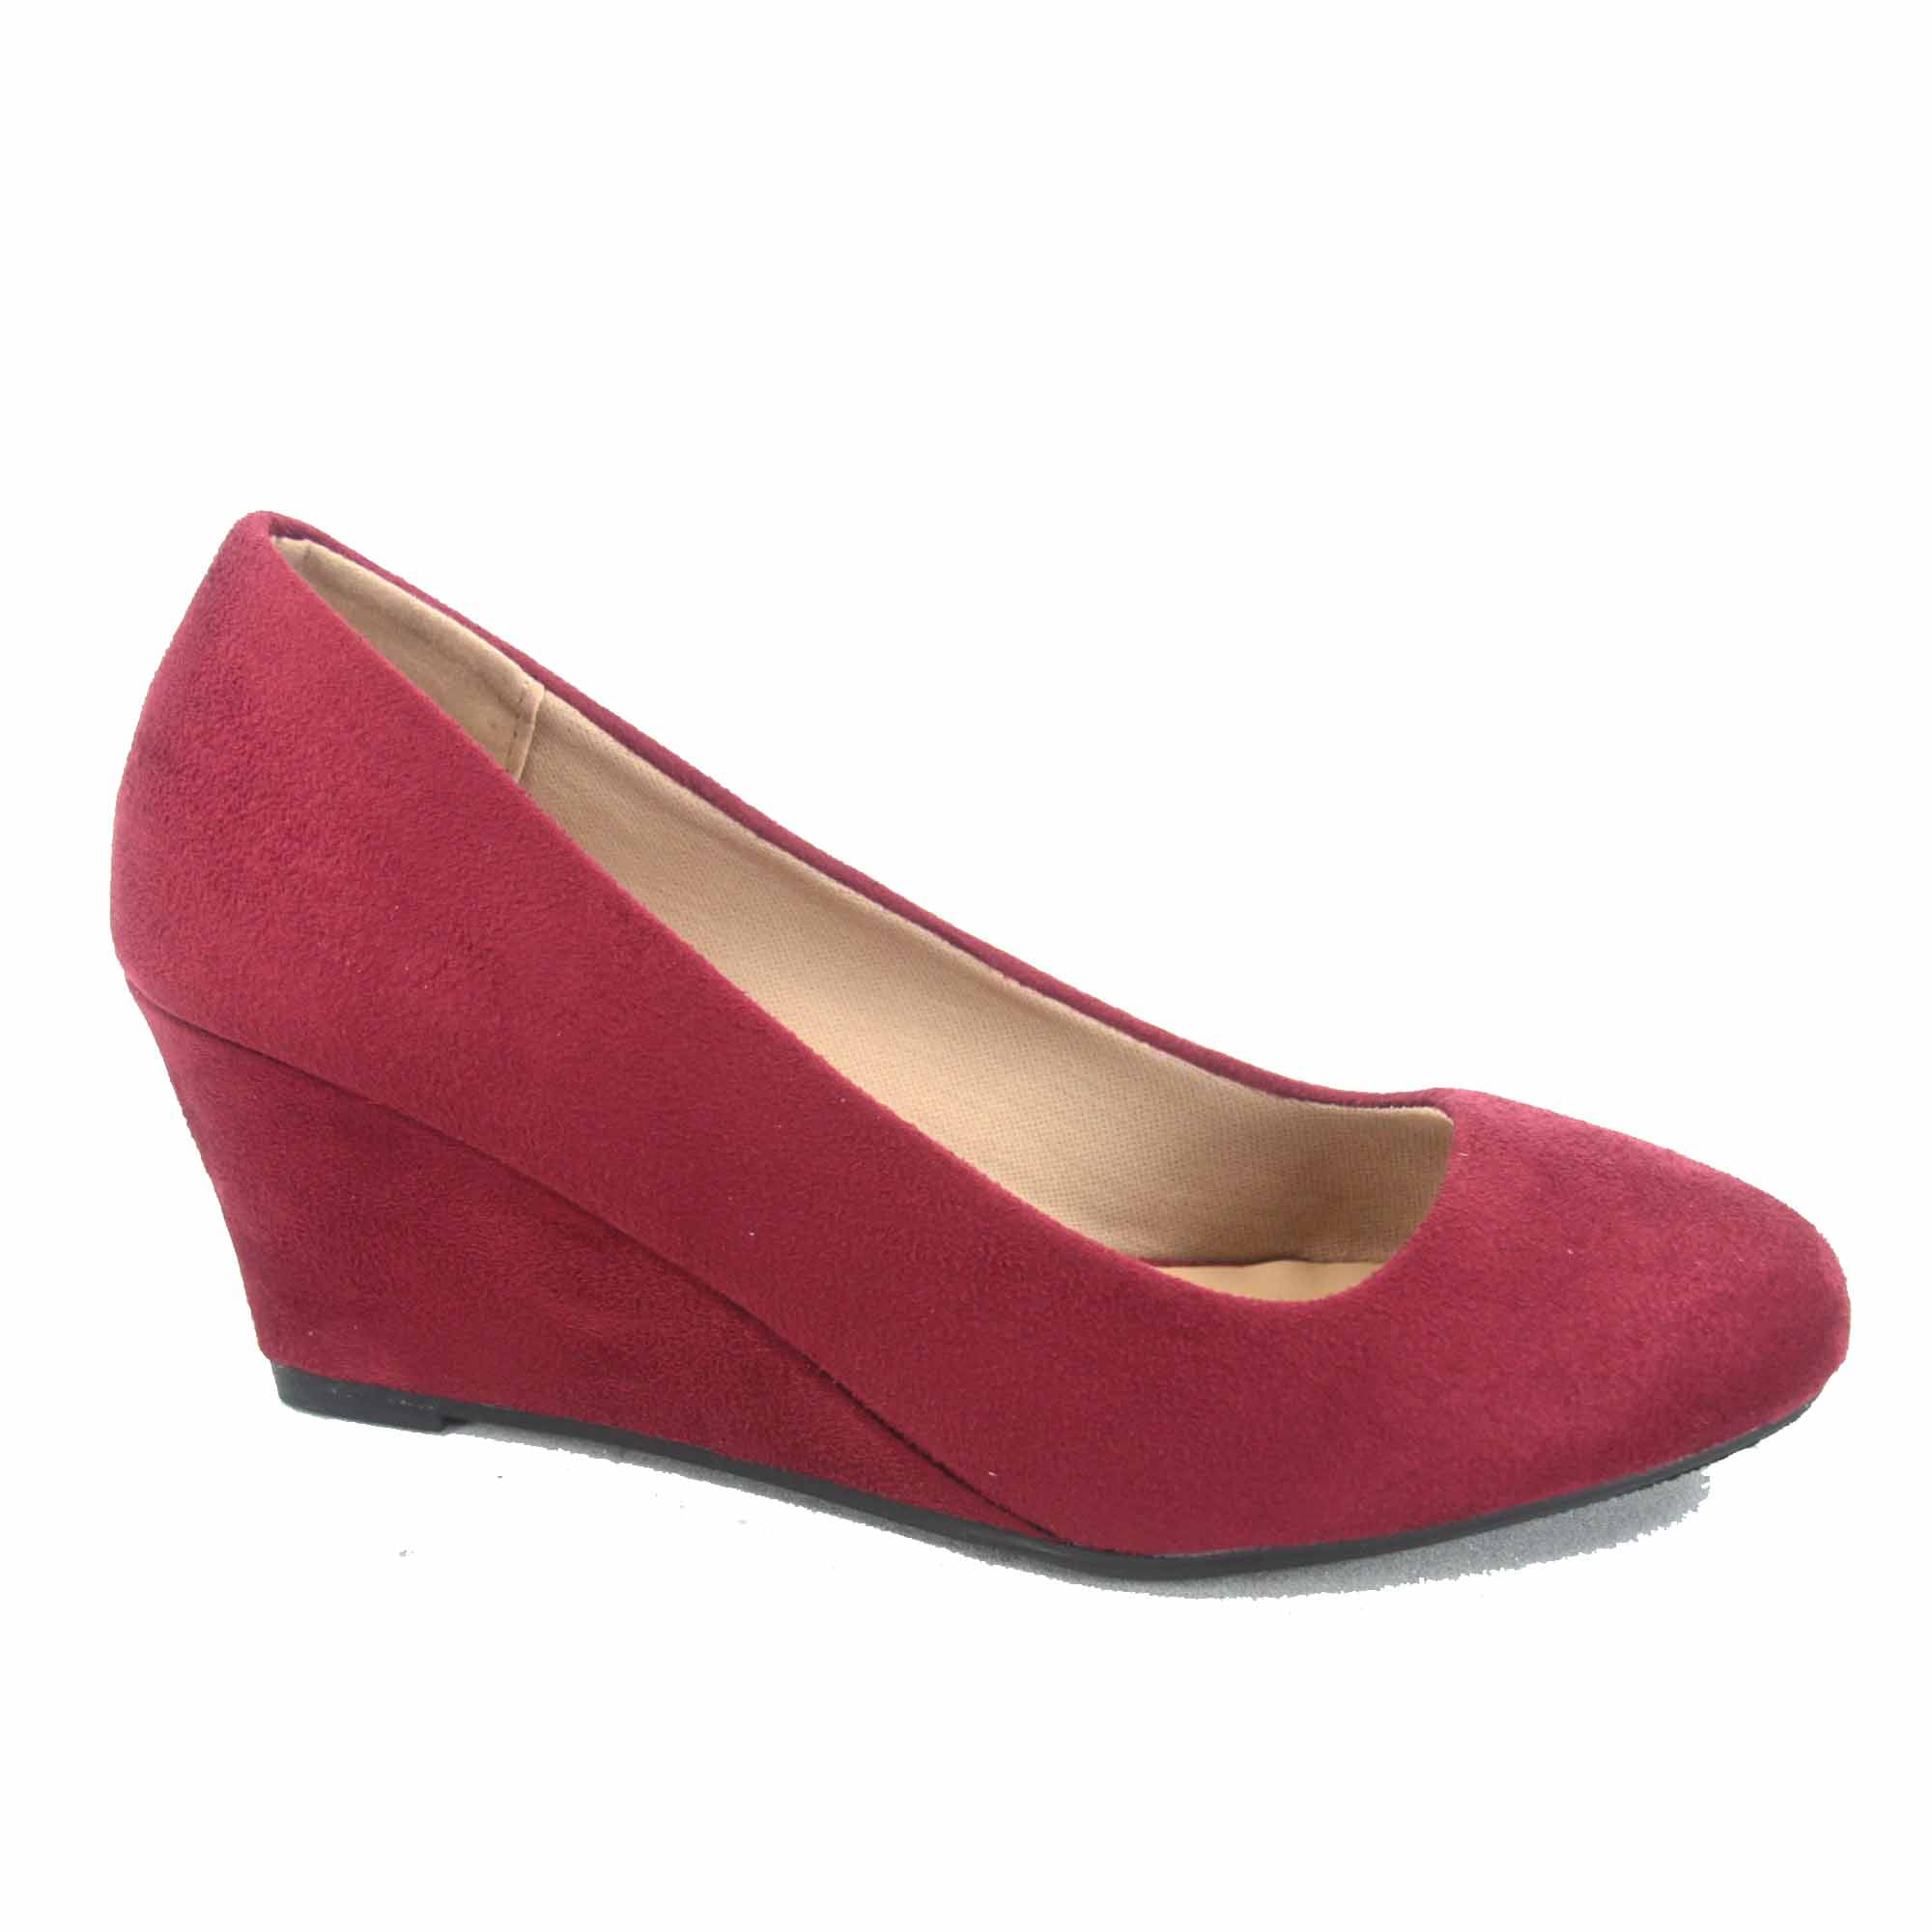 Doris-21 Women's Causal Round Toe Low Wedge Heel Shoes - Walmart.com